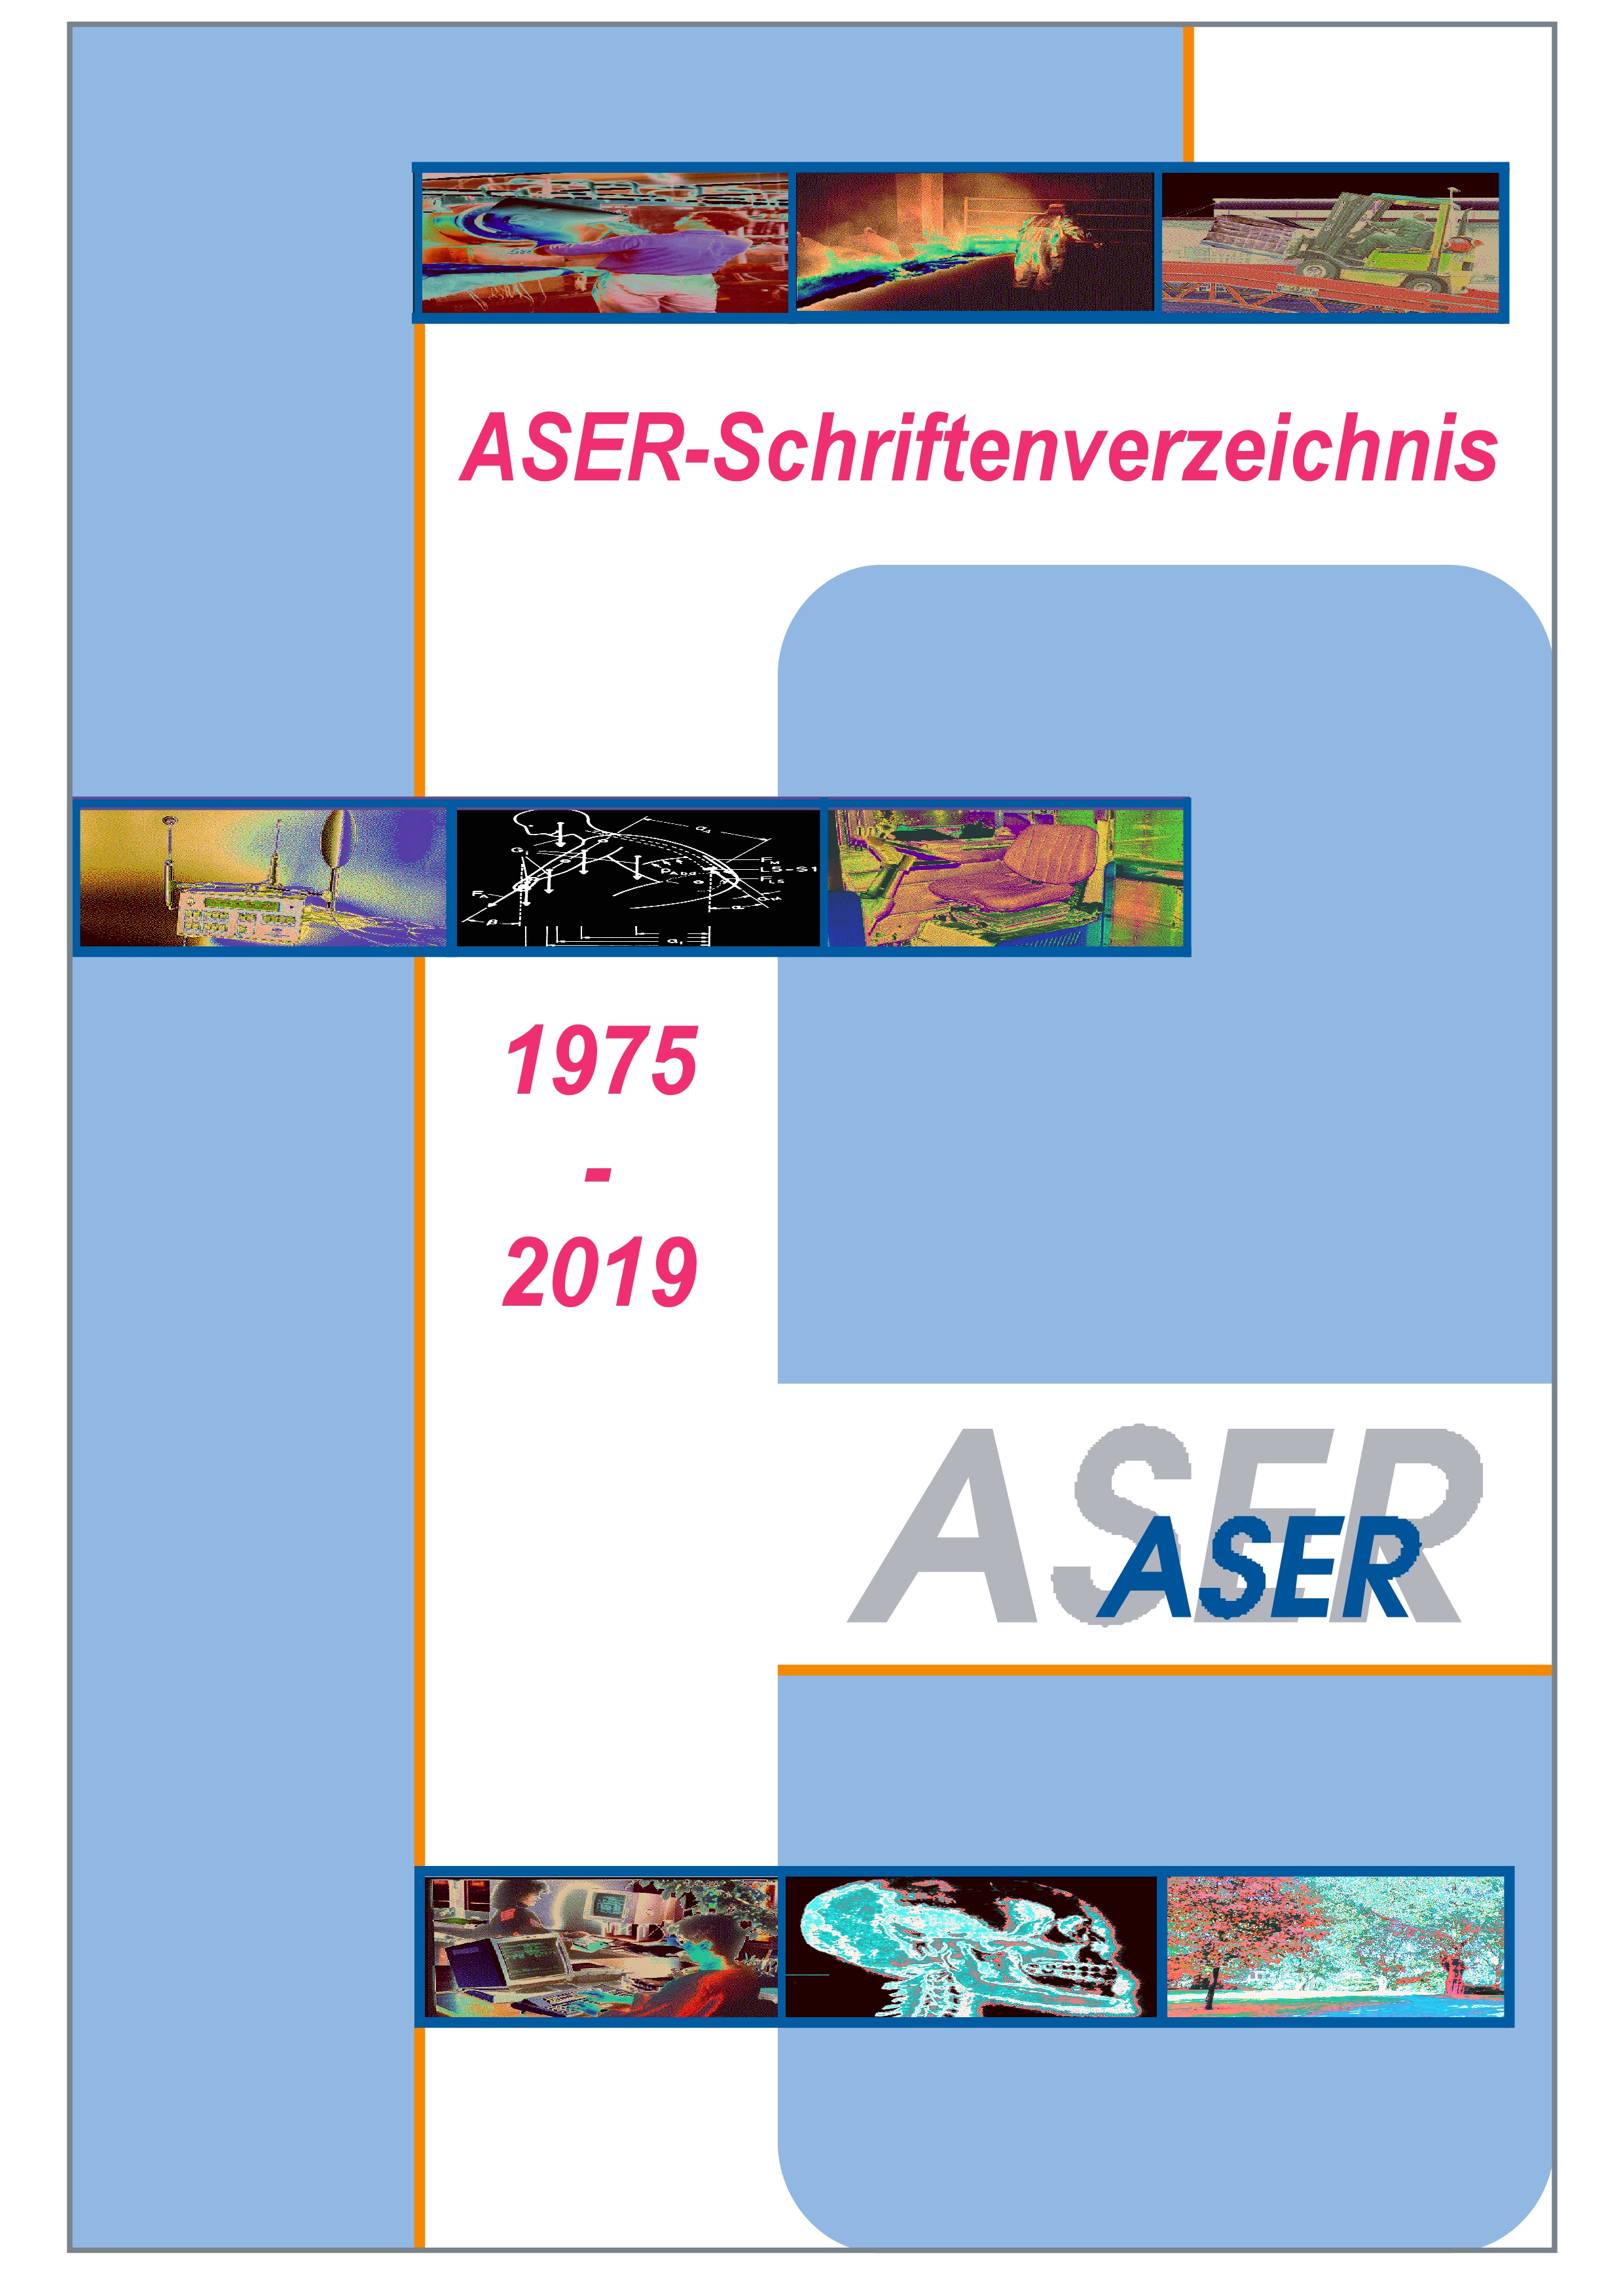 ASER-Schriftenverzeichnis 1975-2019